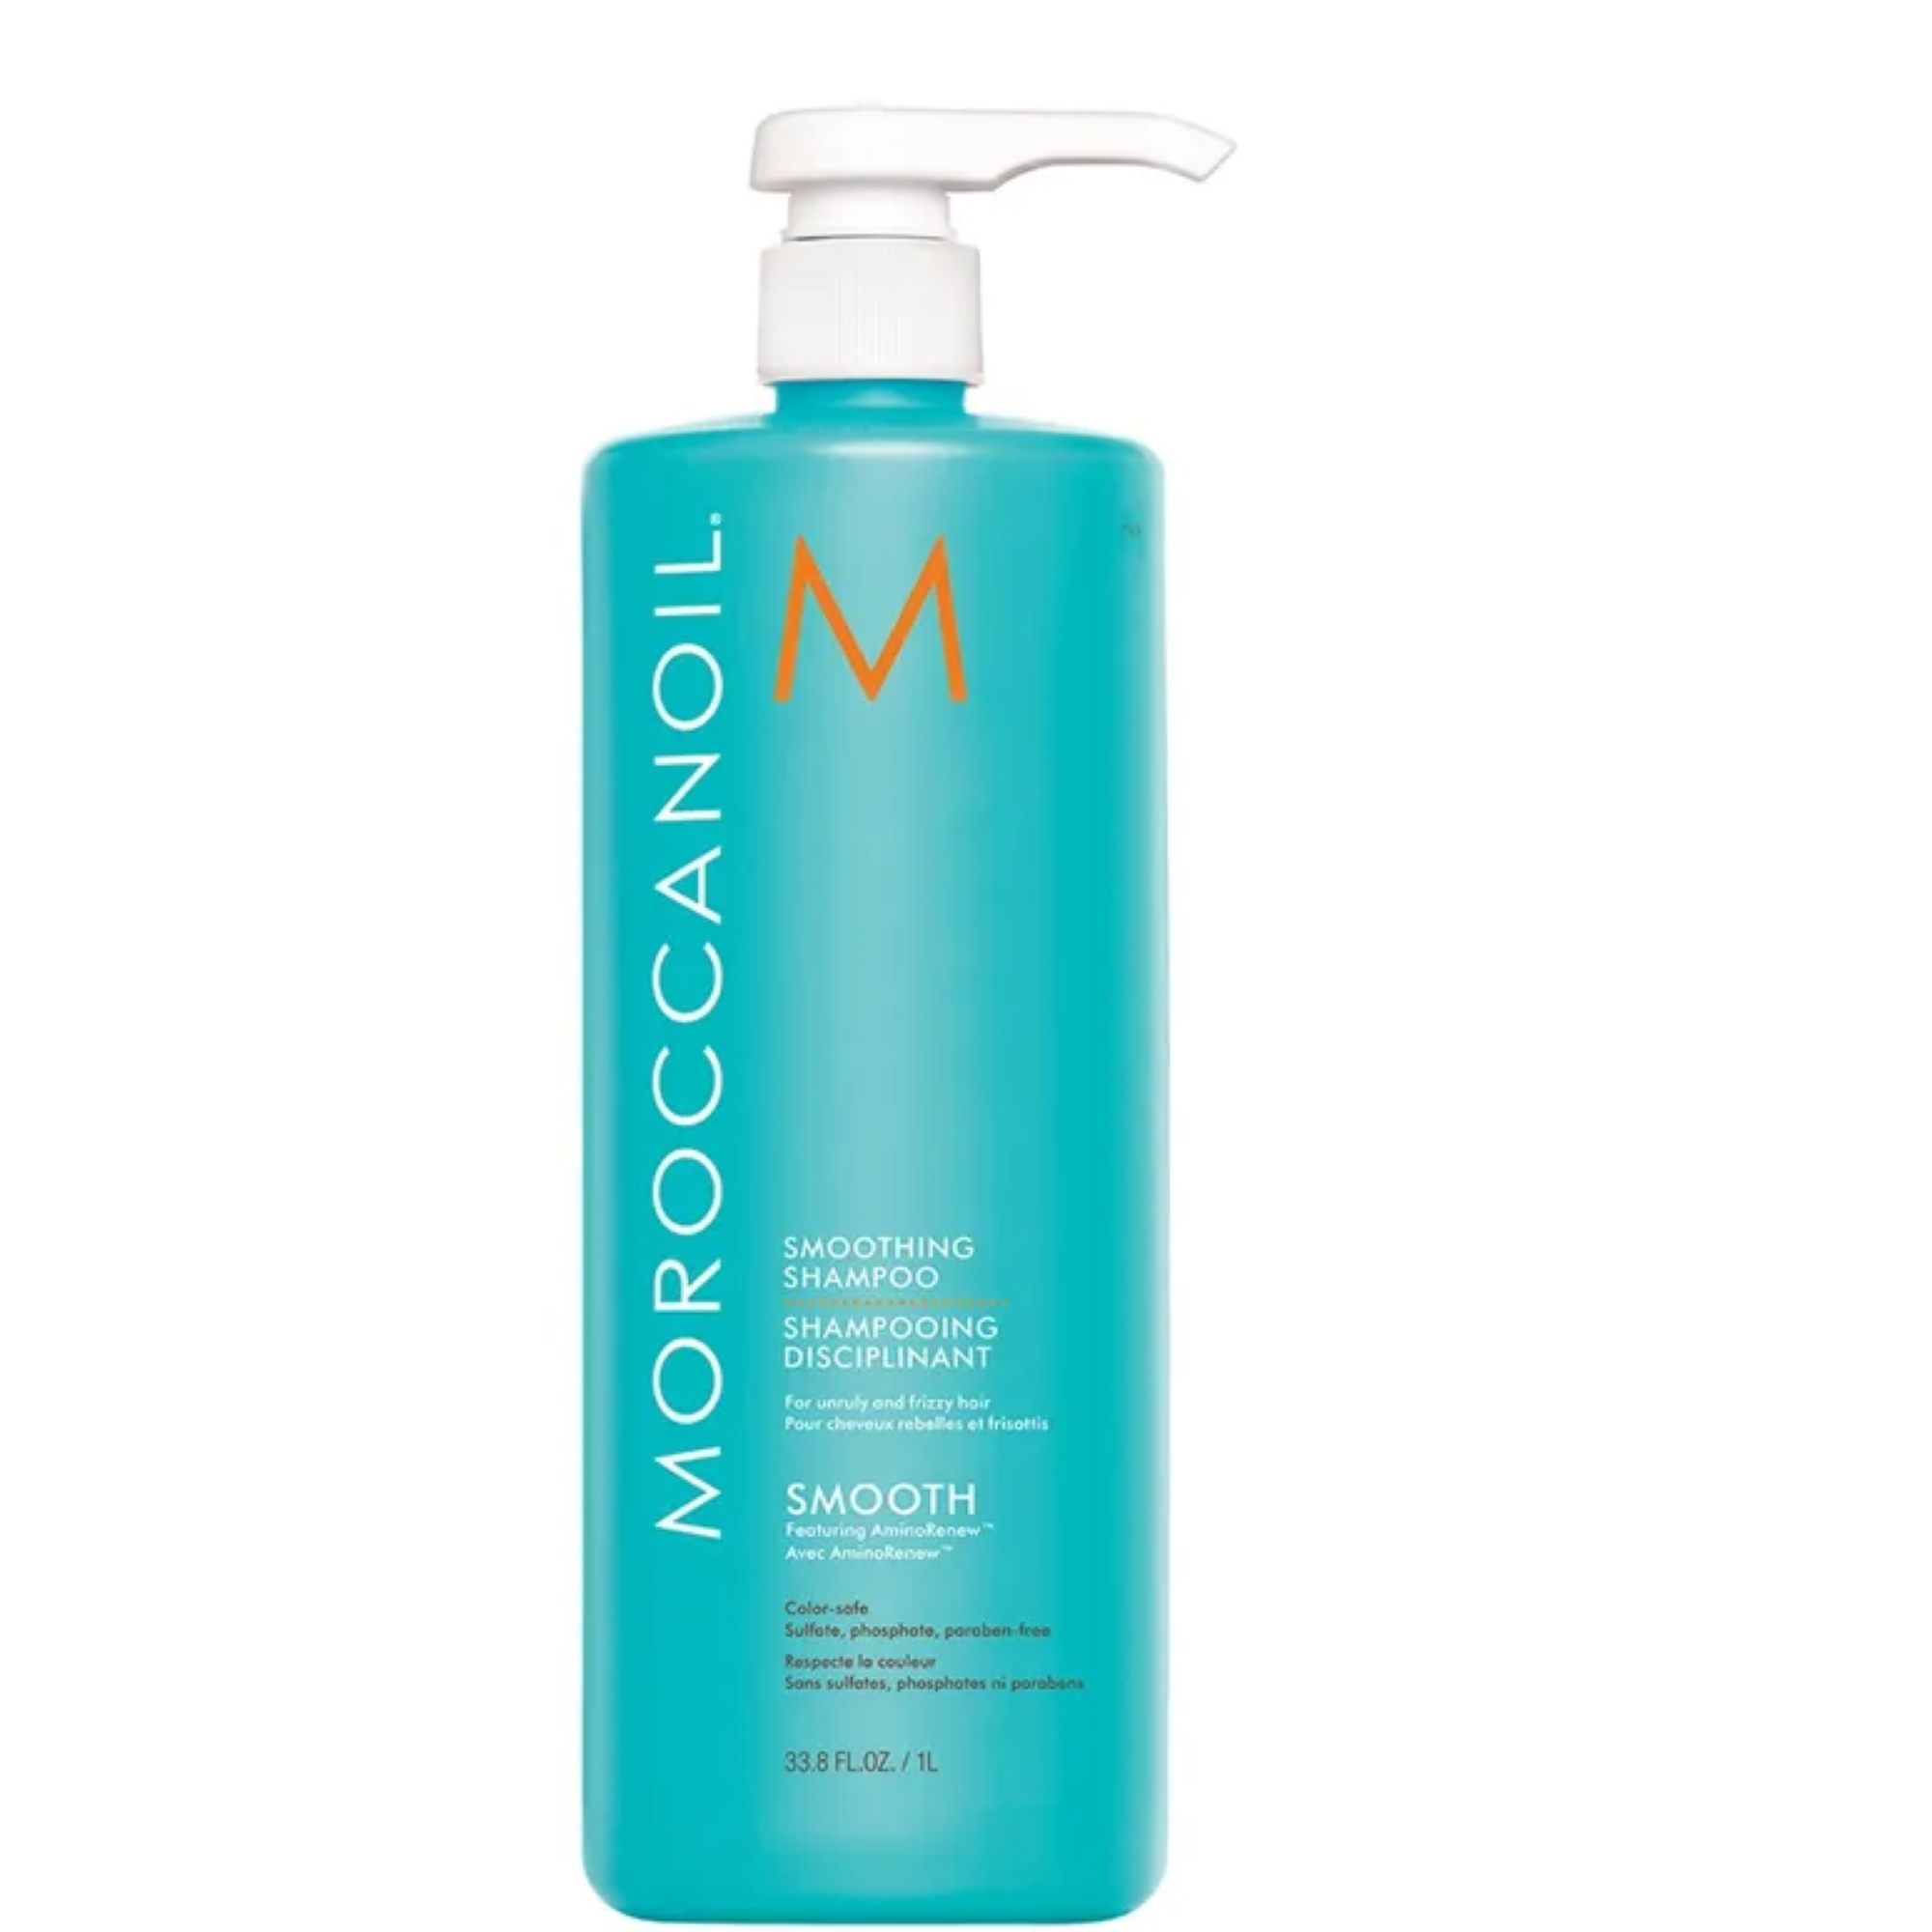 MoroccanOil Frizz Control Shampoo and Conditioner Liter Duo / 2x 33.8OZ